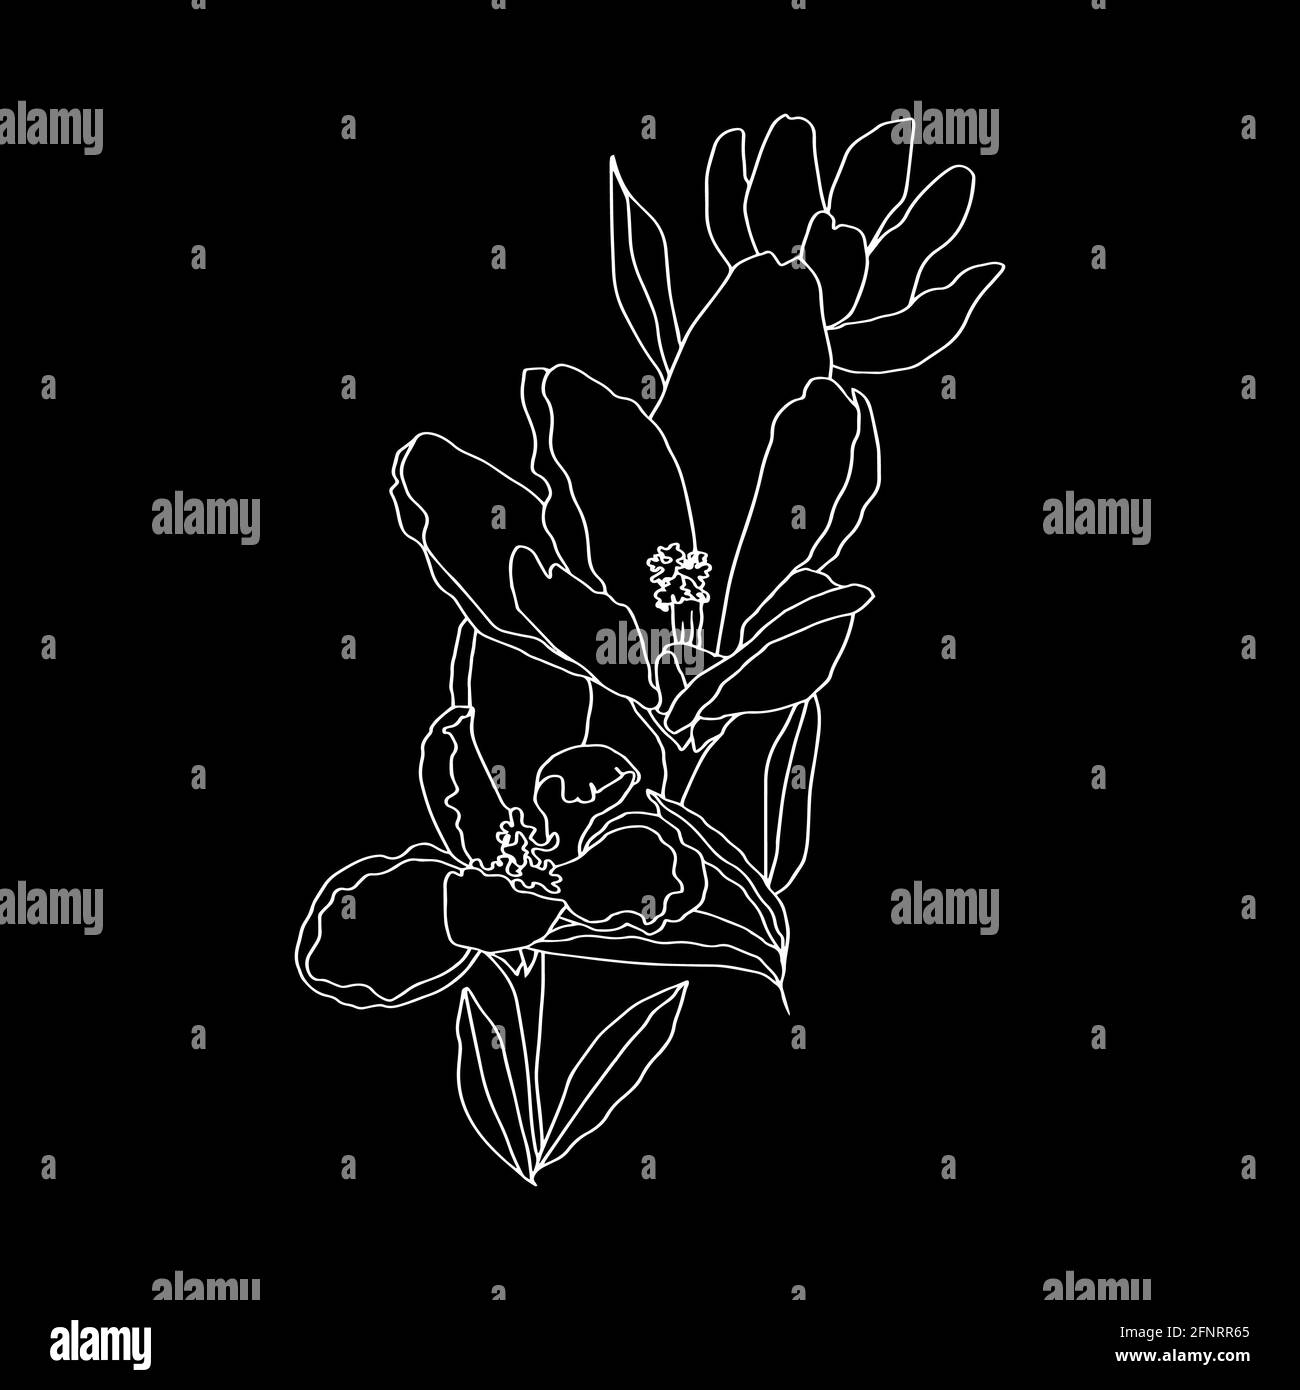 Krokussen Linie Kunst Knospen Blumen mit Blättern 3 Stück schwarz Und weißen Vektor botanische Illustration Hand Zeichnung Skizze Stockfoto